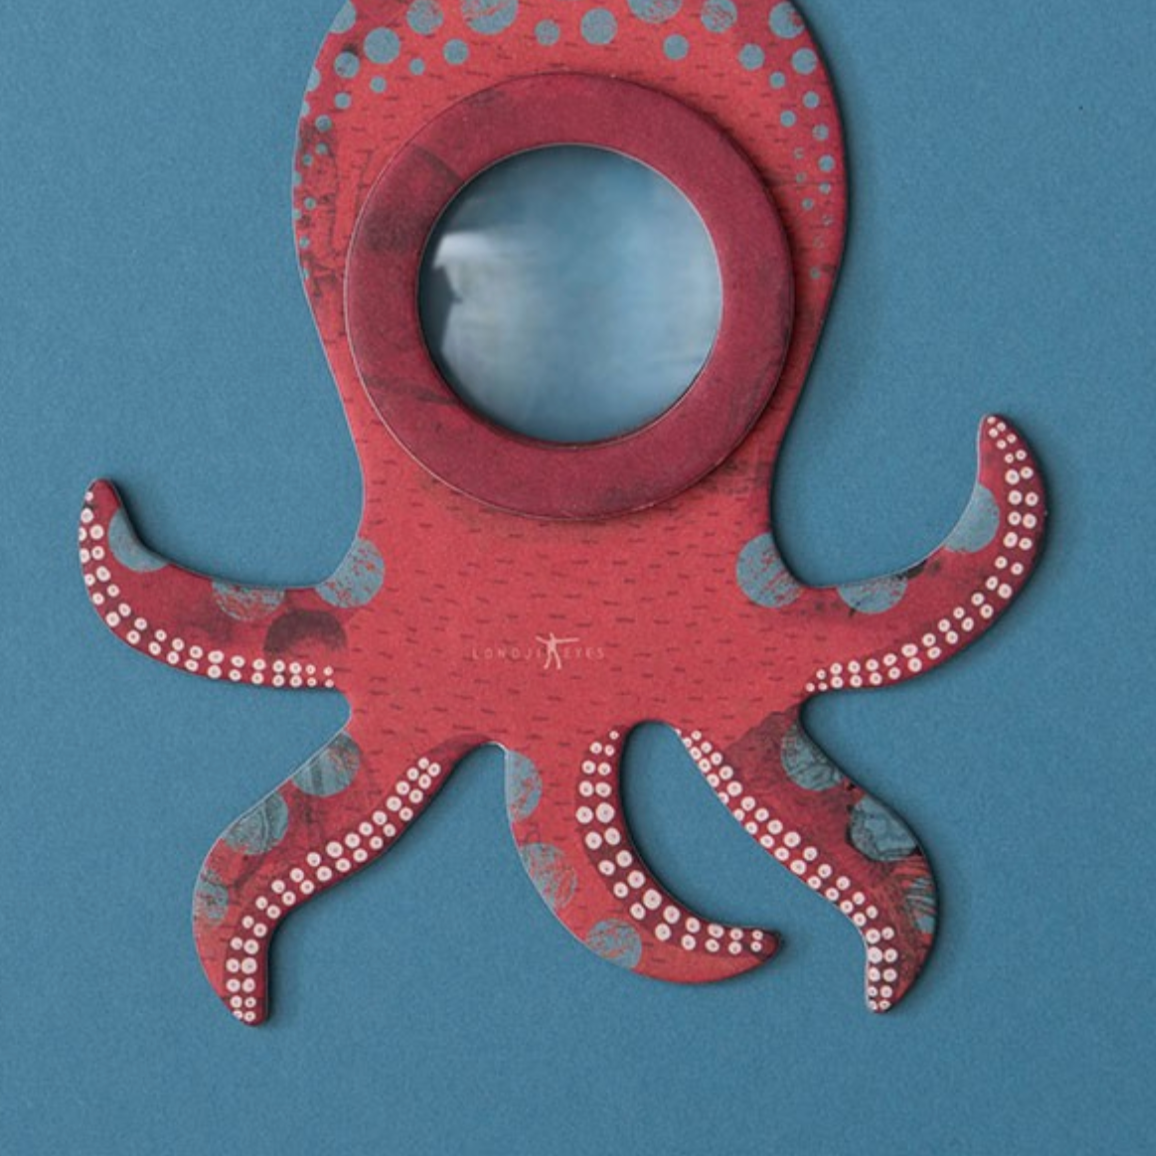 Octopus Eye Magnifying Lens